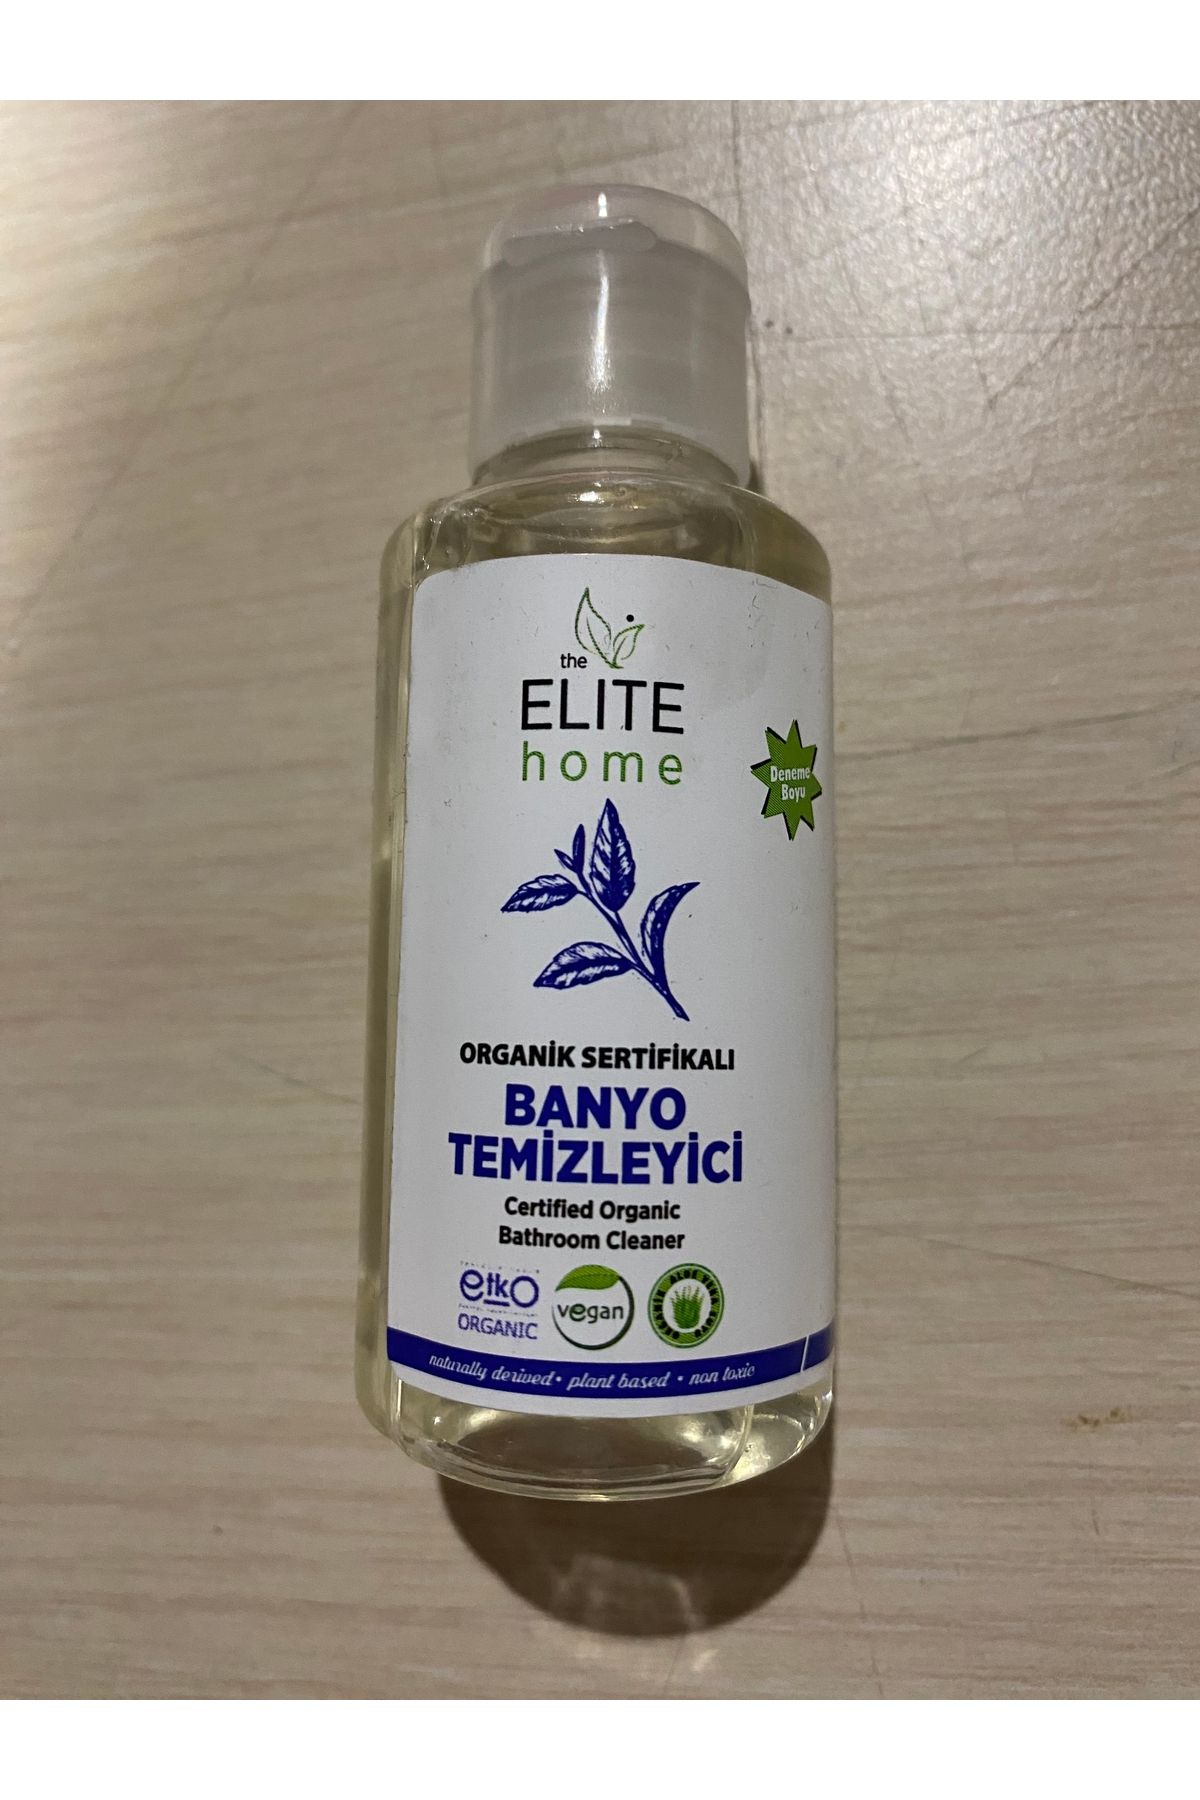 The Elite Home Organik Sertifikalı Banyo Temizleyici 50 ml